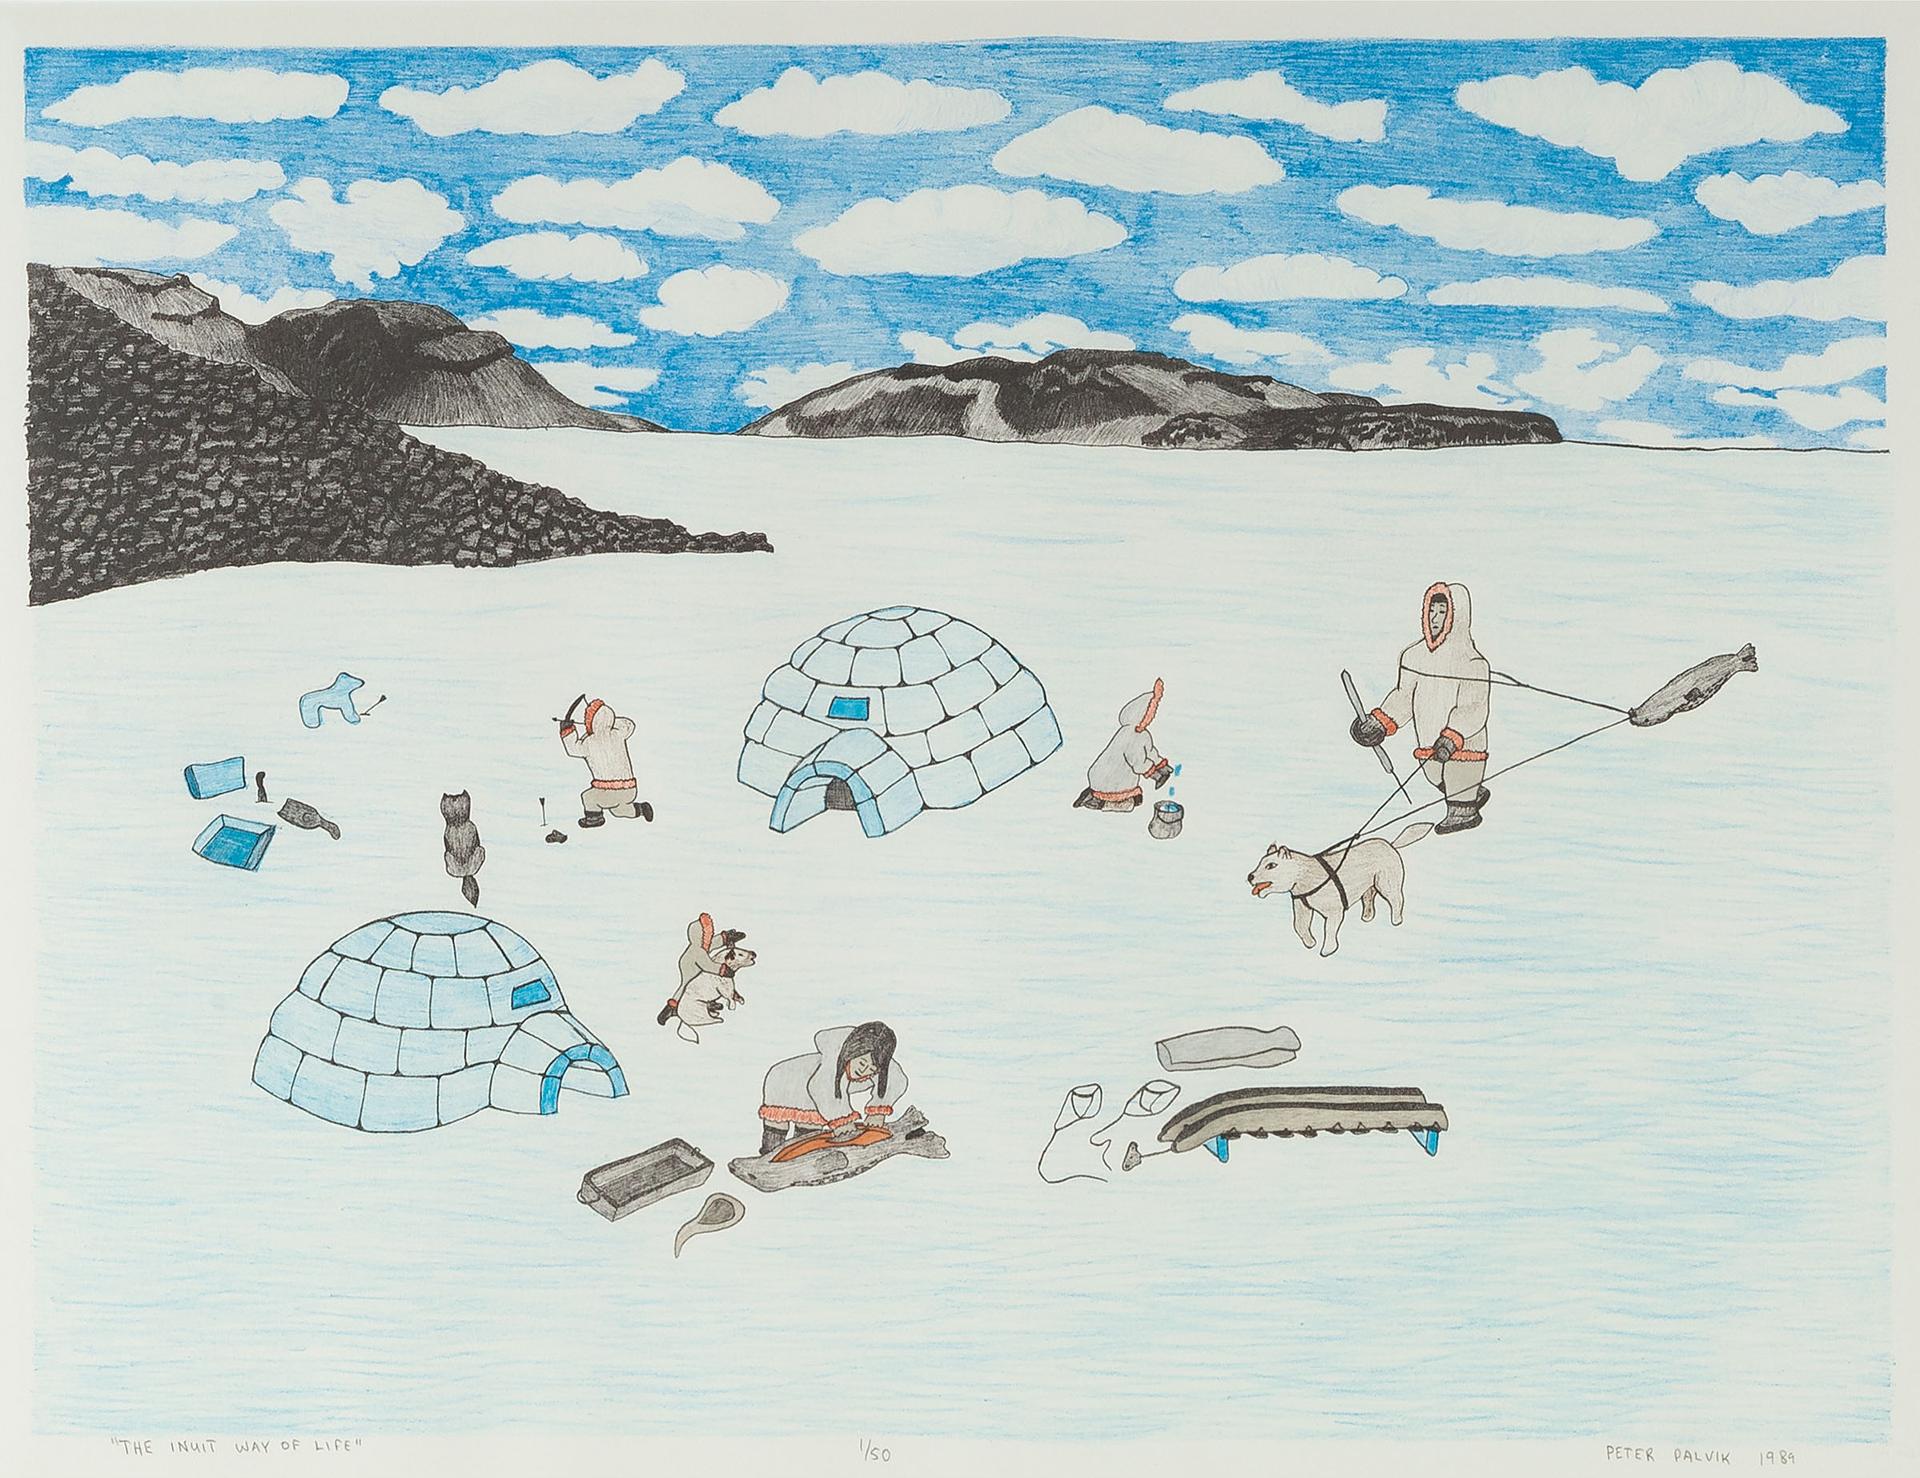 Peter Palvik (1960) - The Inuit Way Of Life